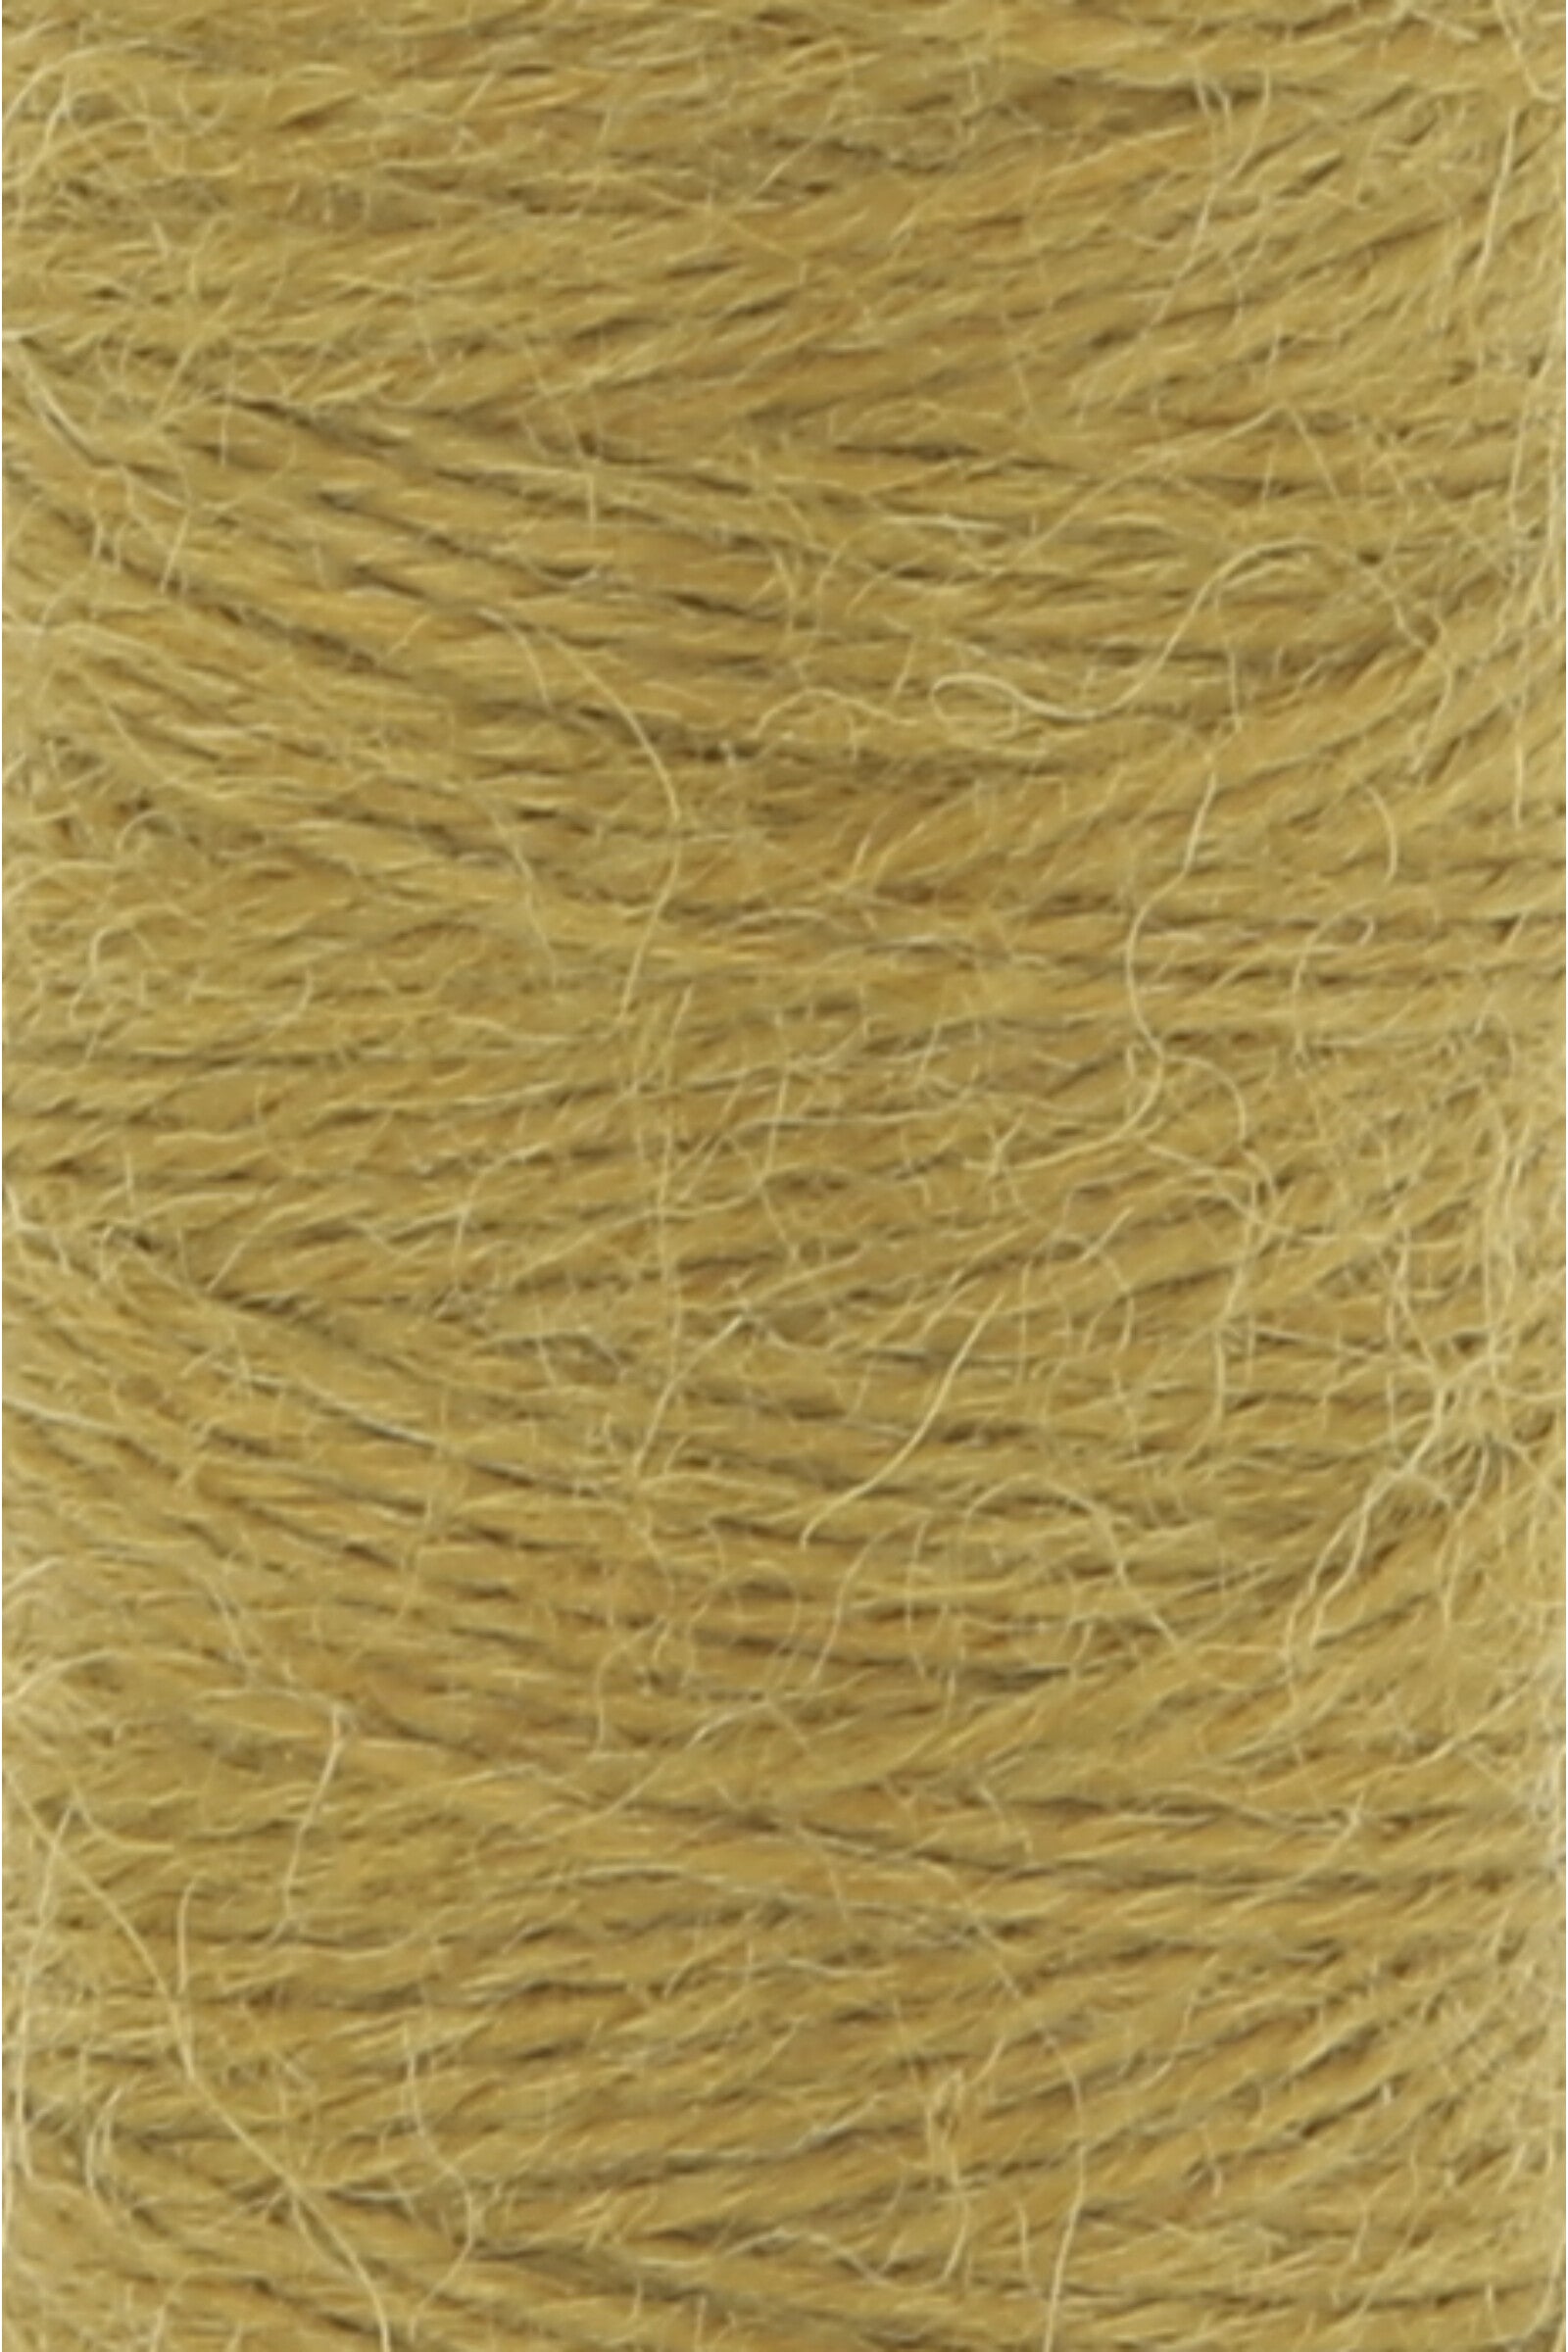 Lang Jawoll Bobbins yarn, color yellow